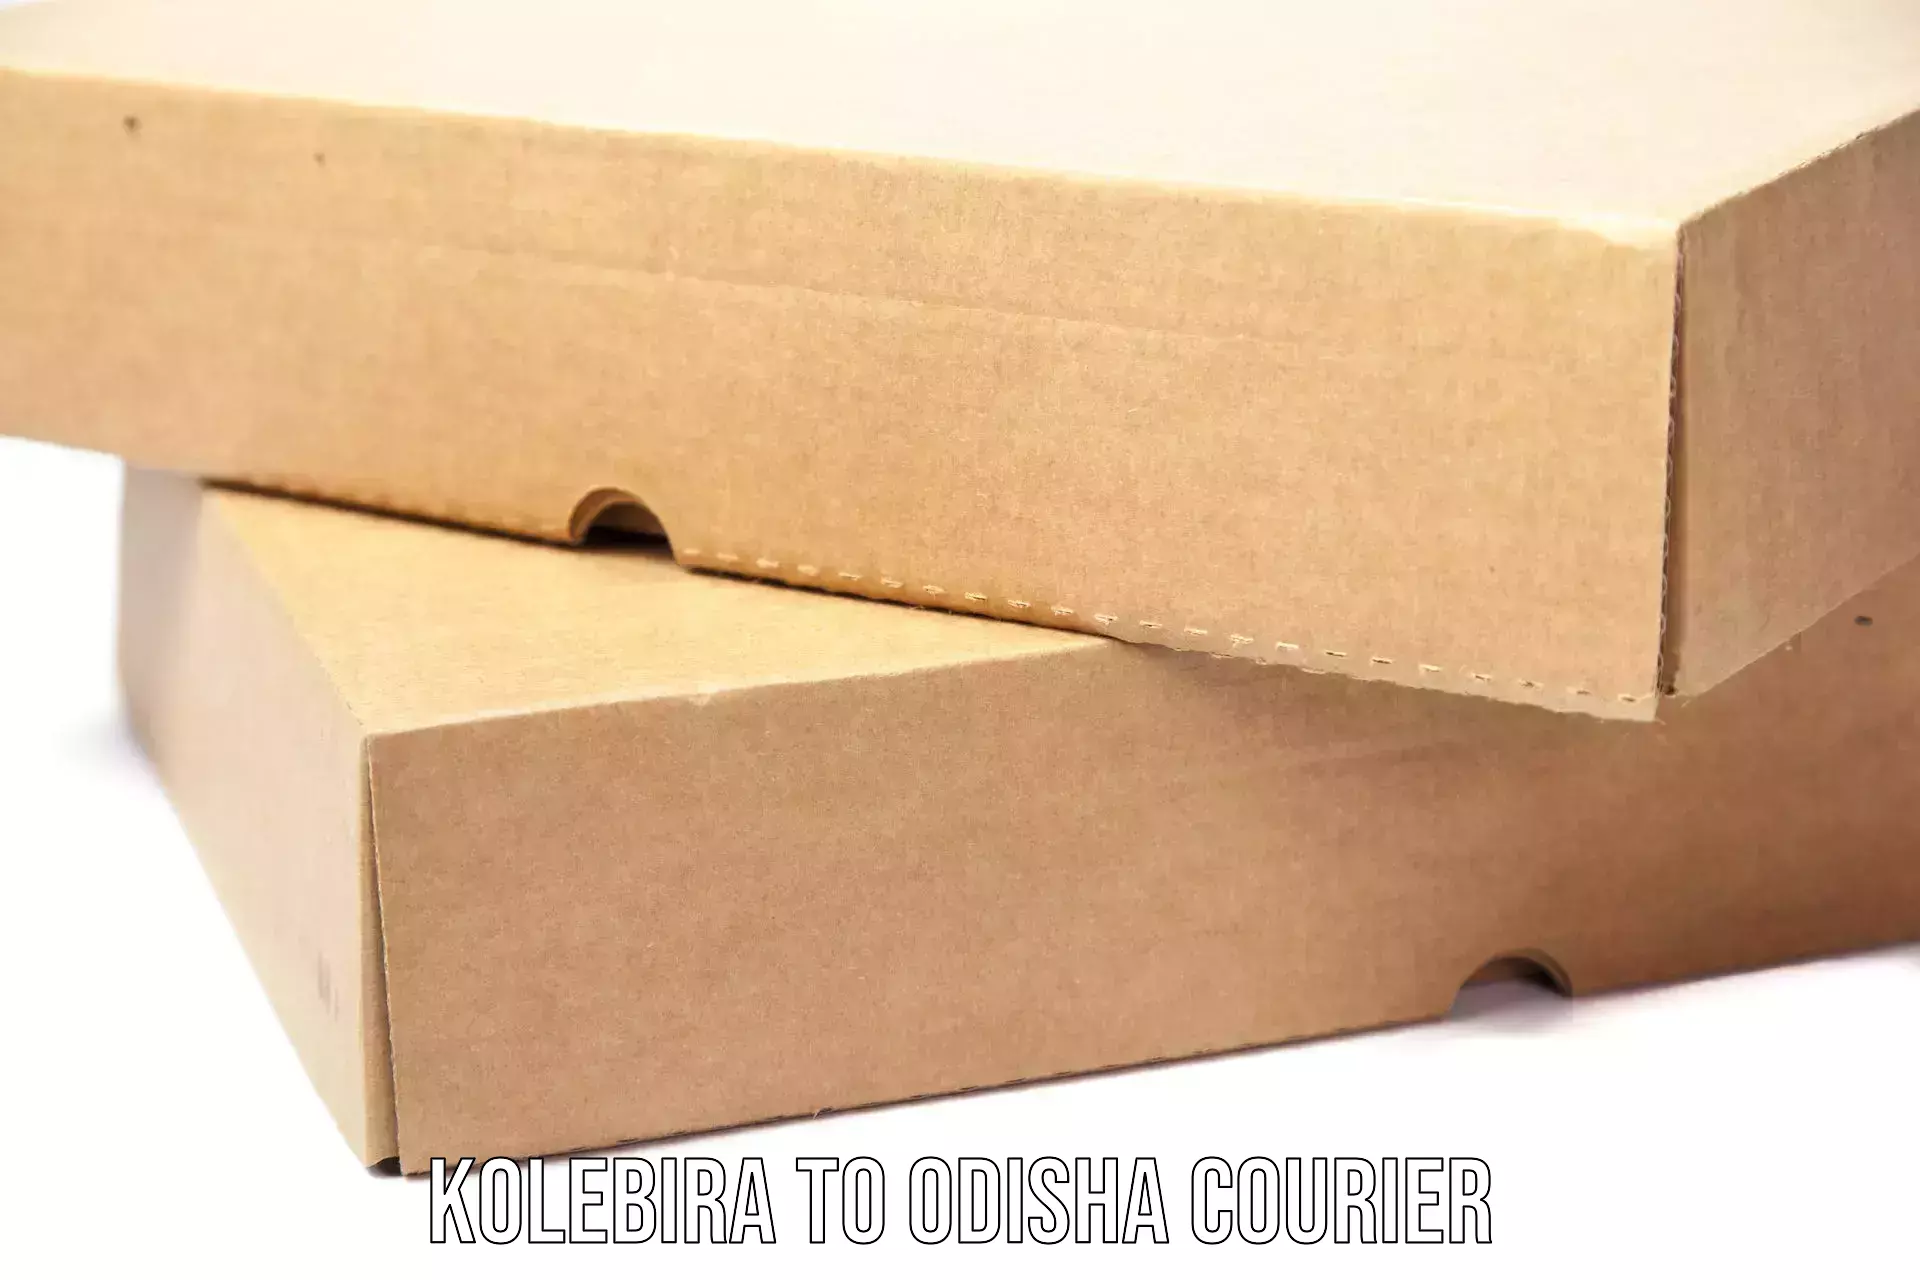 Return courier service Kolebira to Odisha